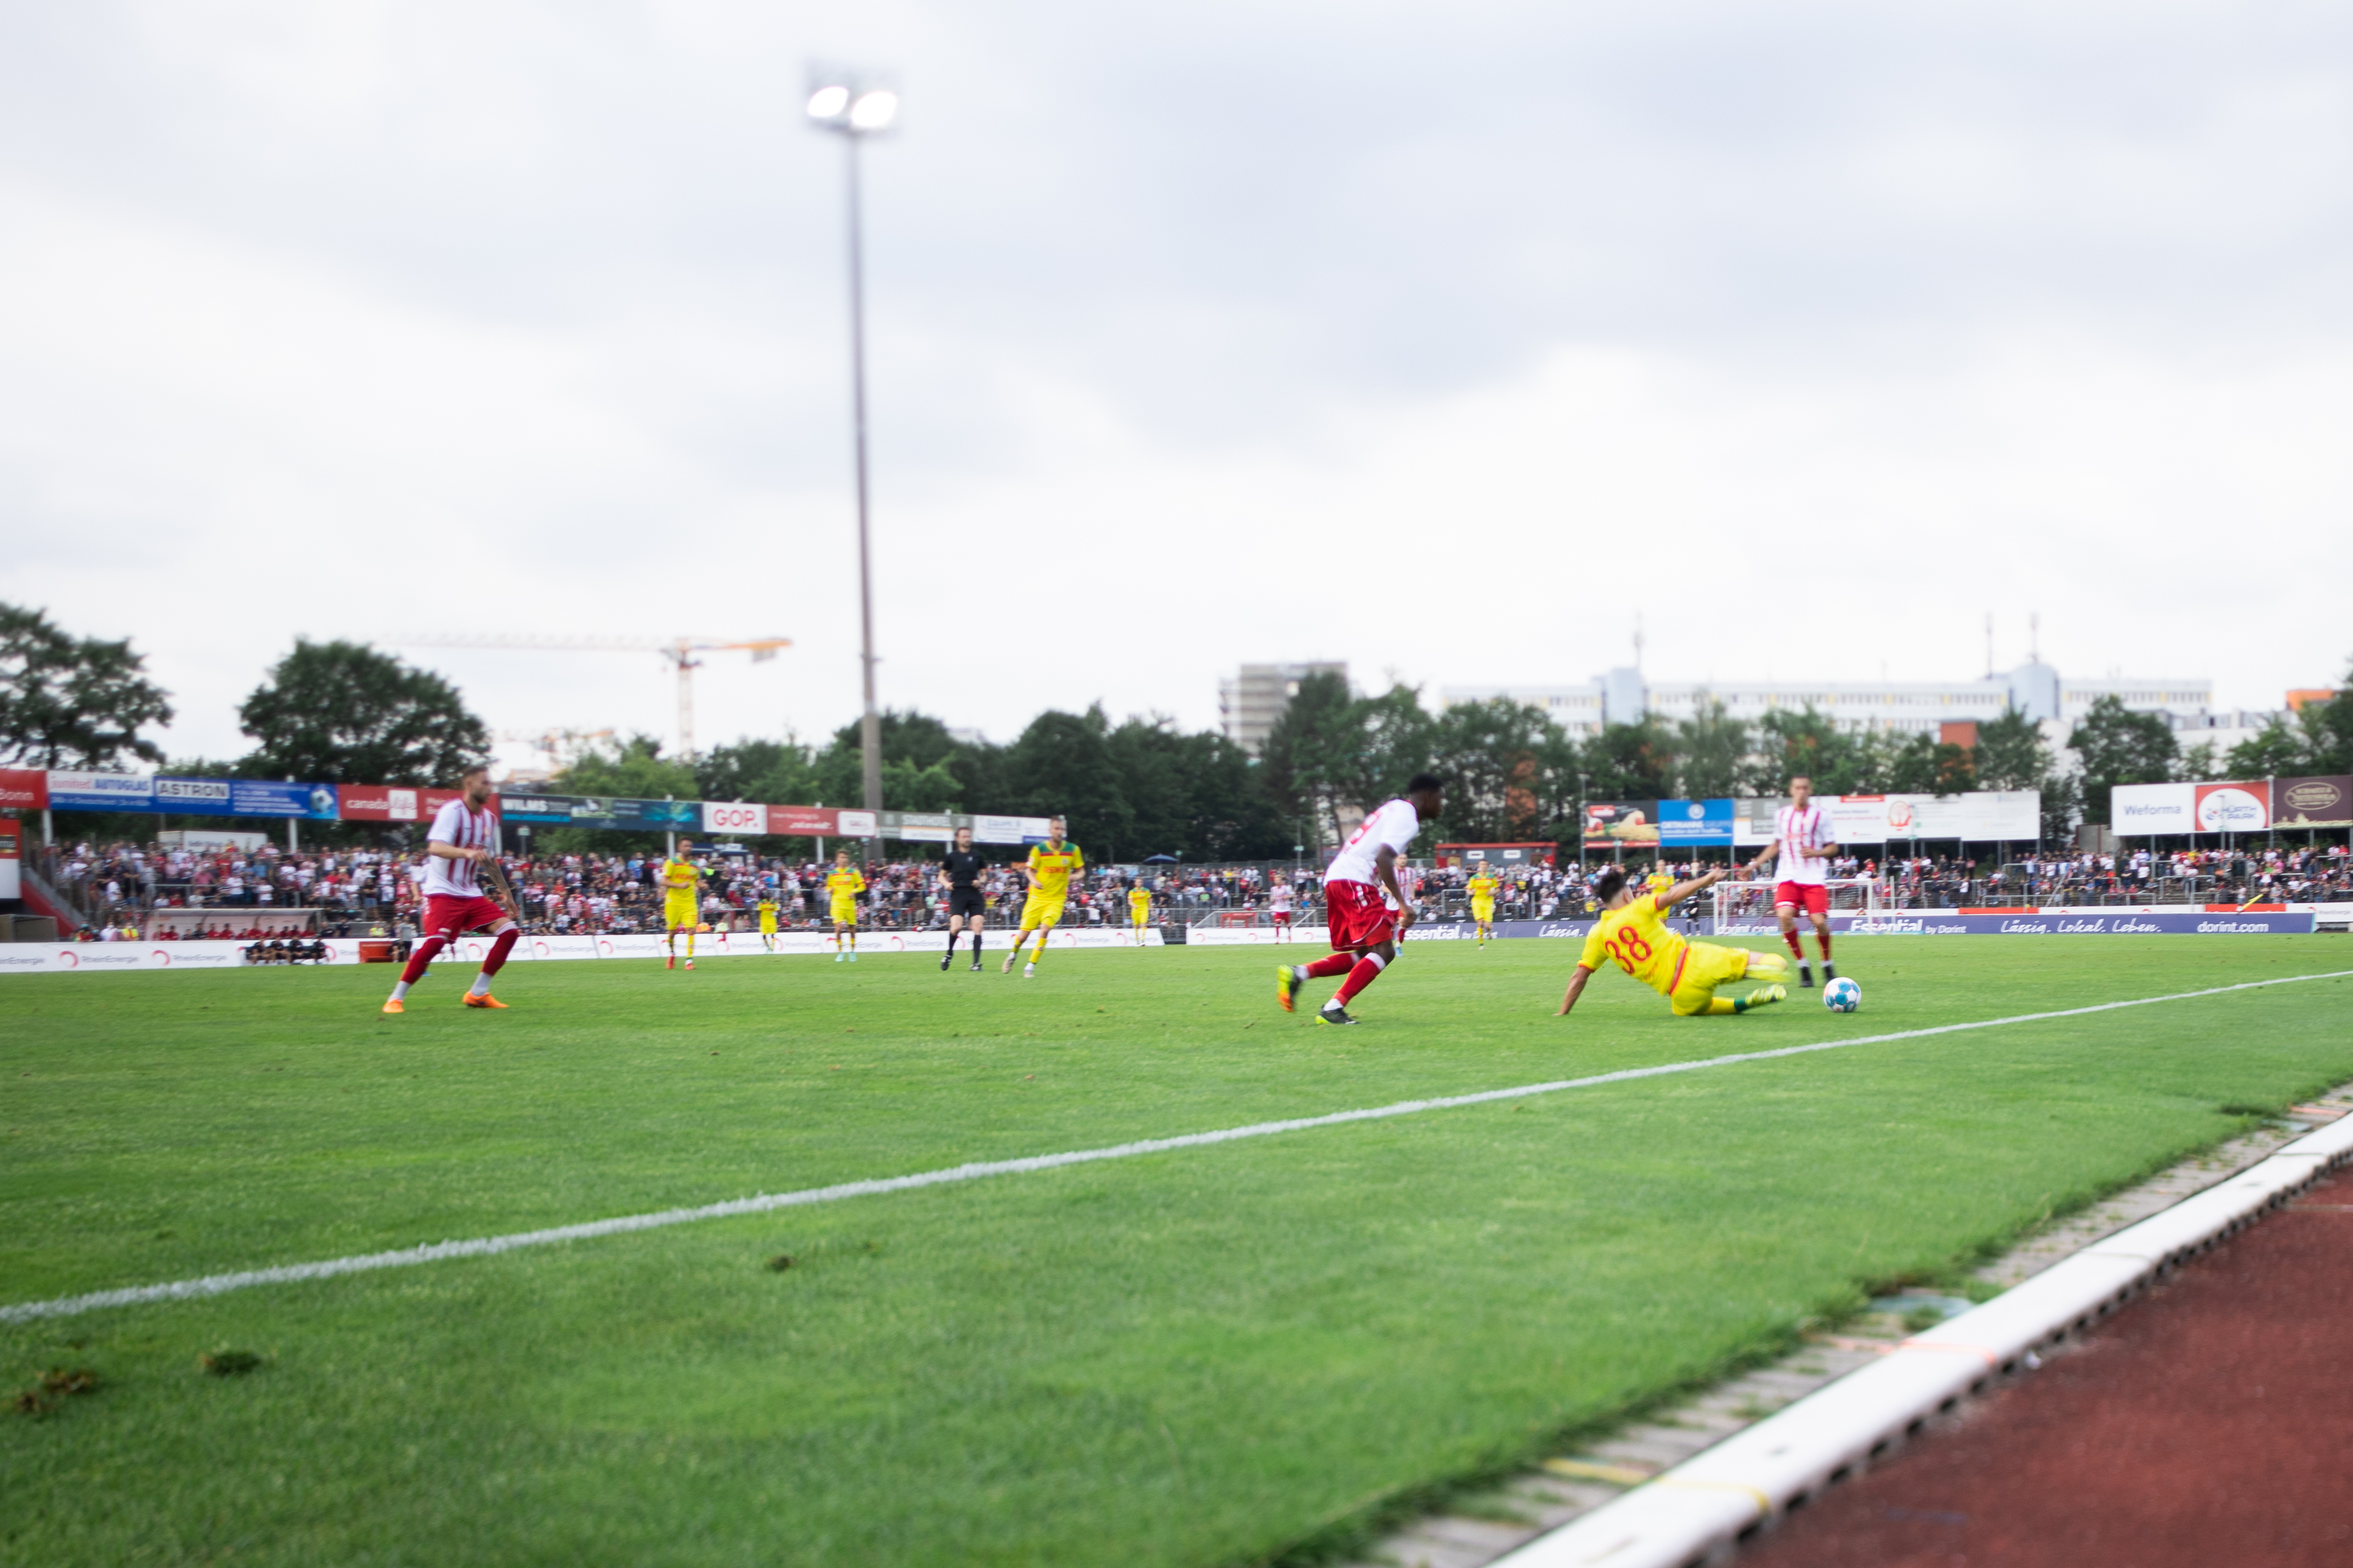 Herren-Regionalliga West: Spieltage bis Saisonende 2021/2022 zeitgenau angesetzt